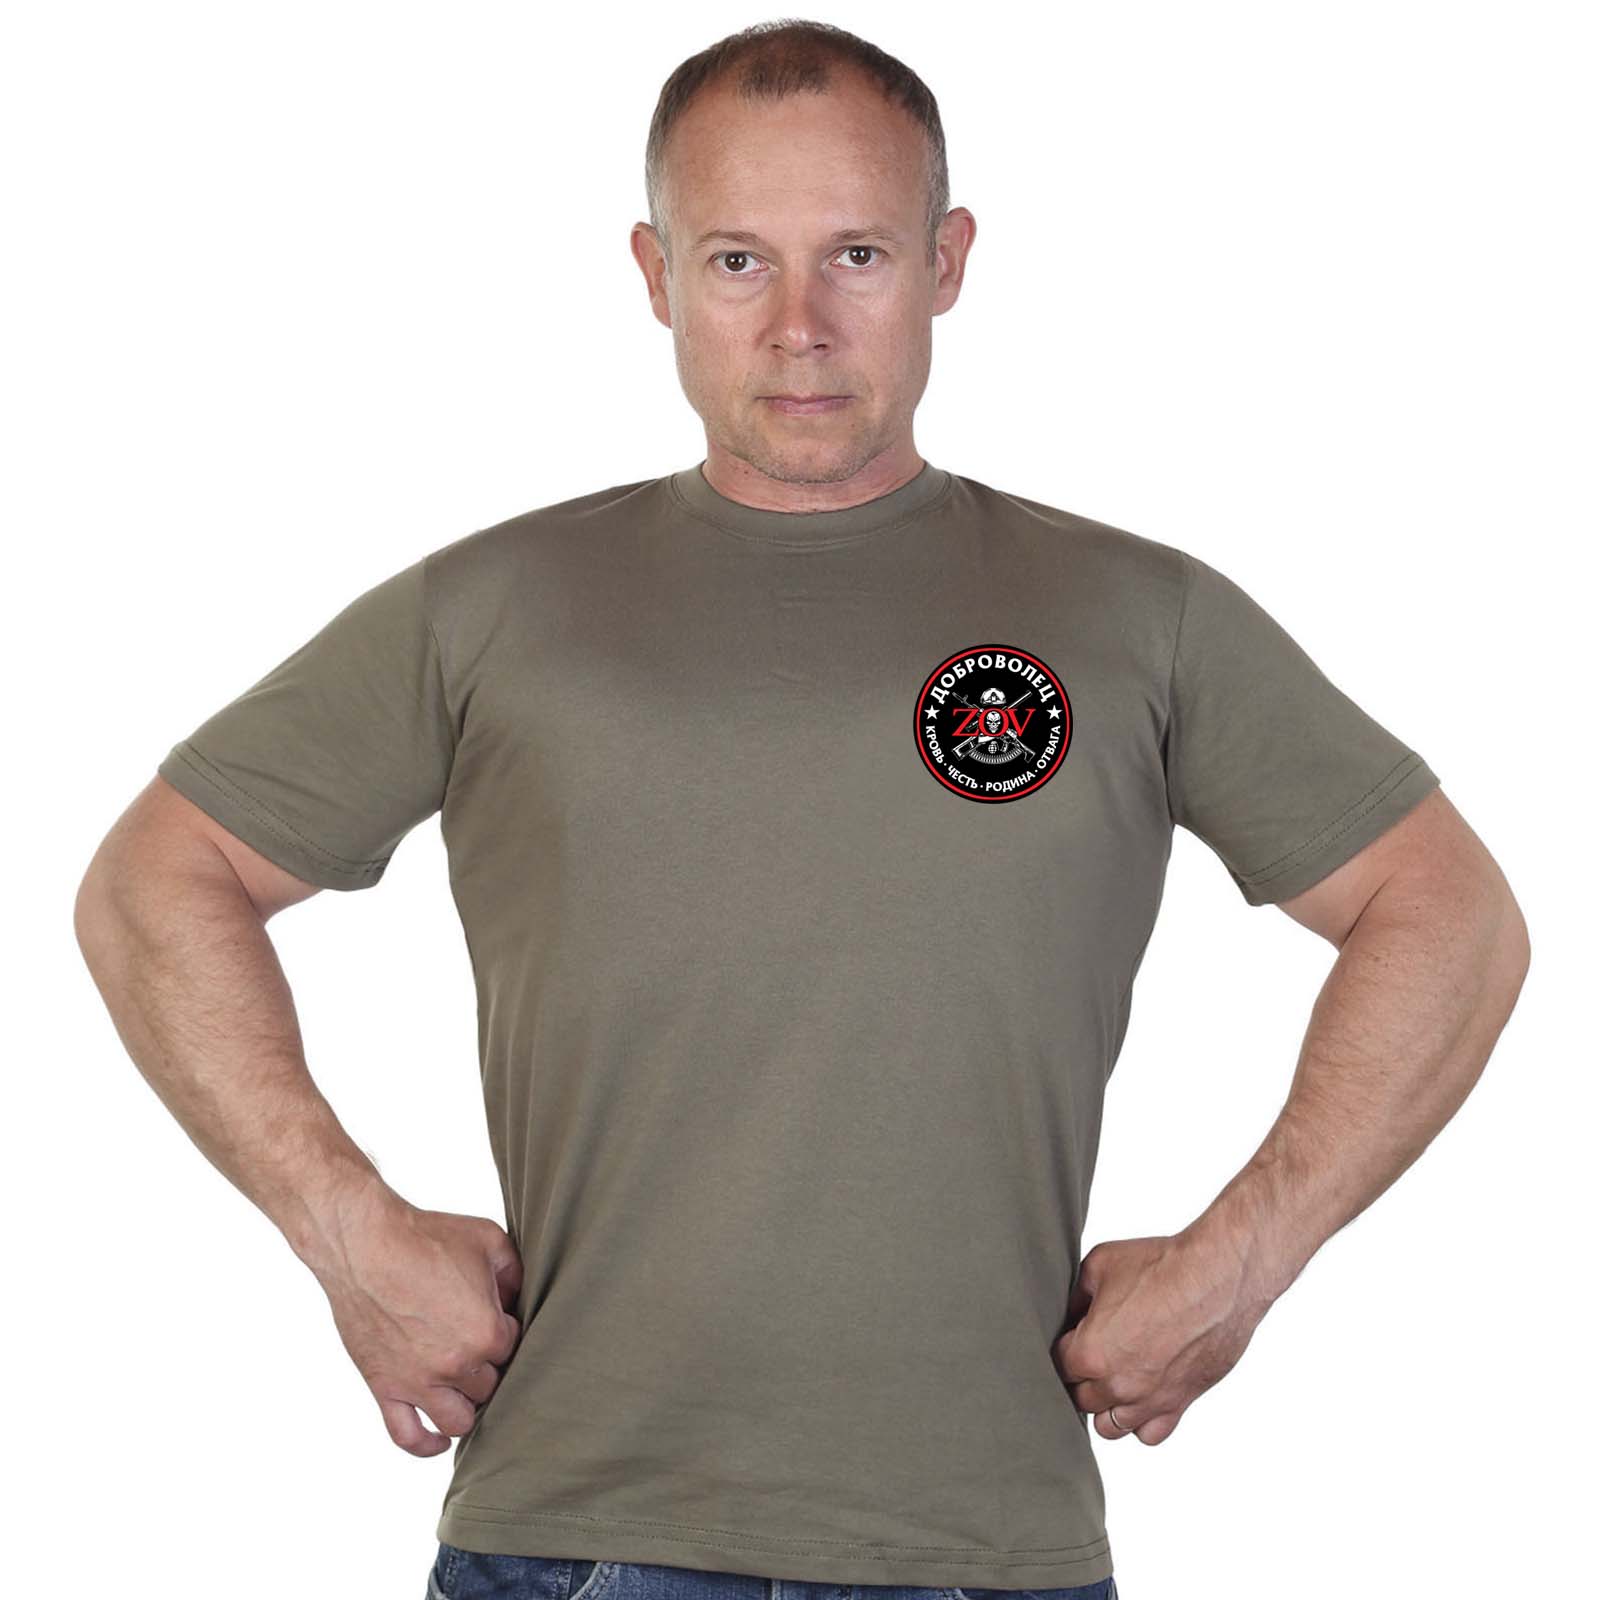 Купить мужскую хлопковую футболку с термотрансфером Доброволец ZOV выгодно